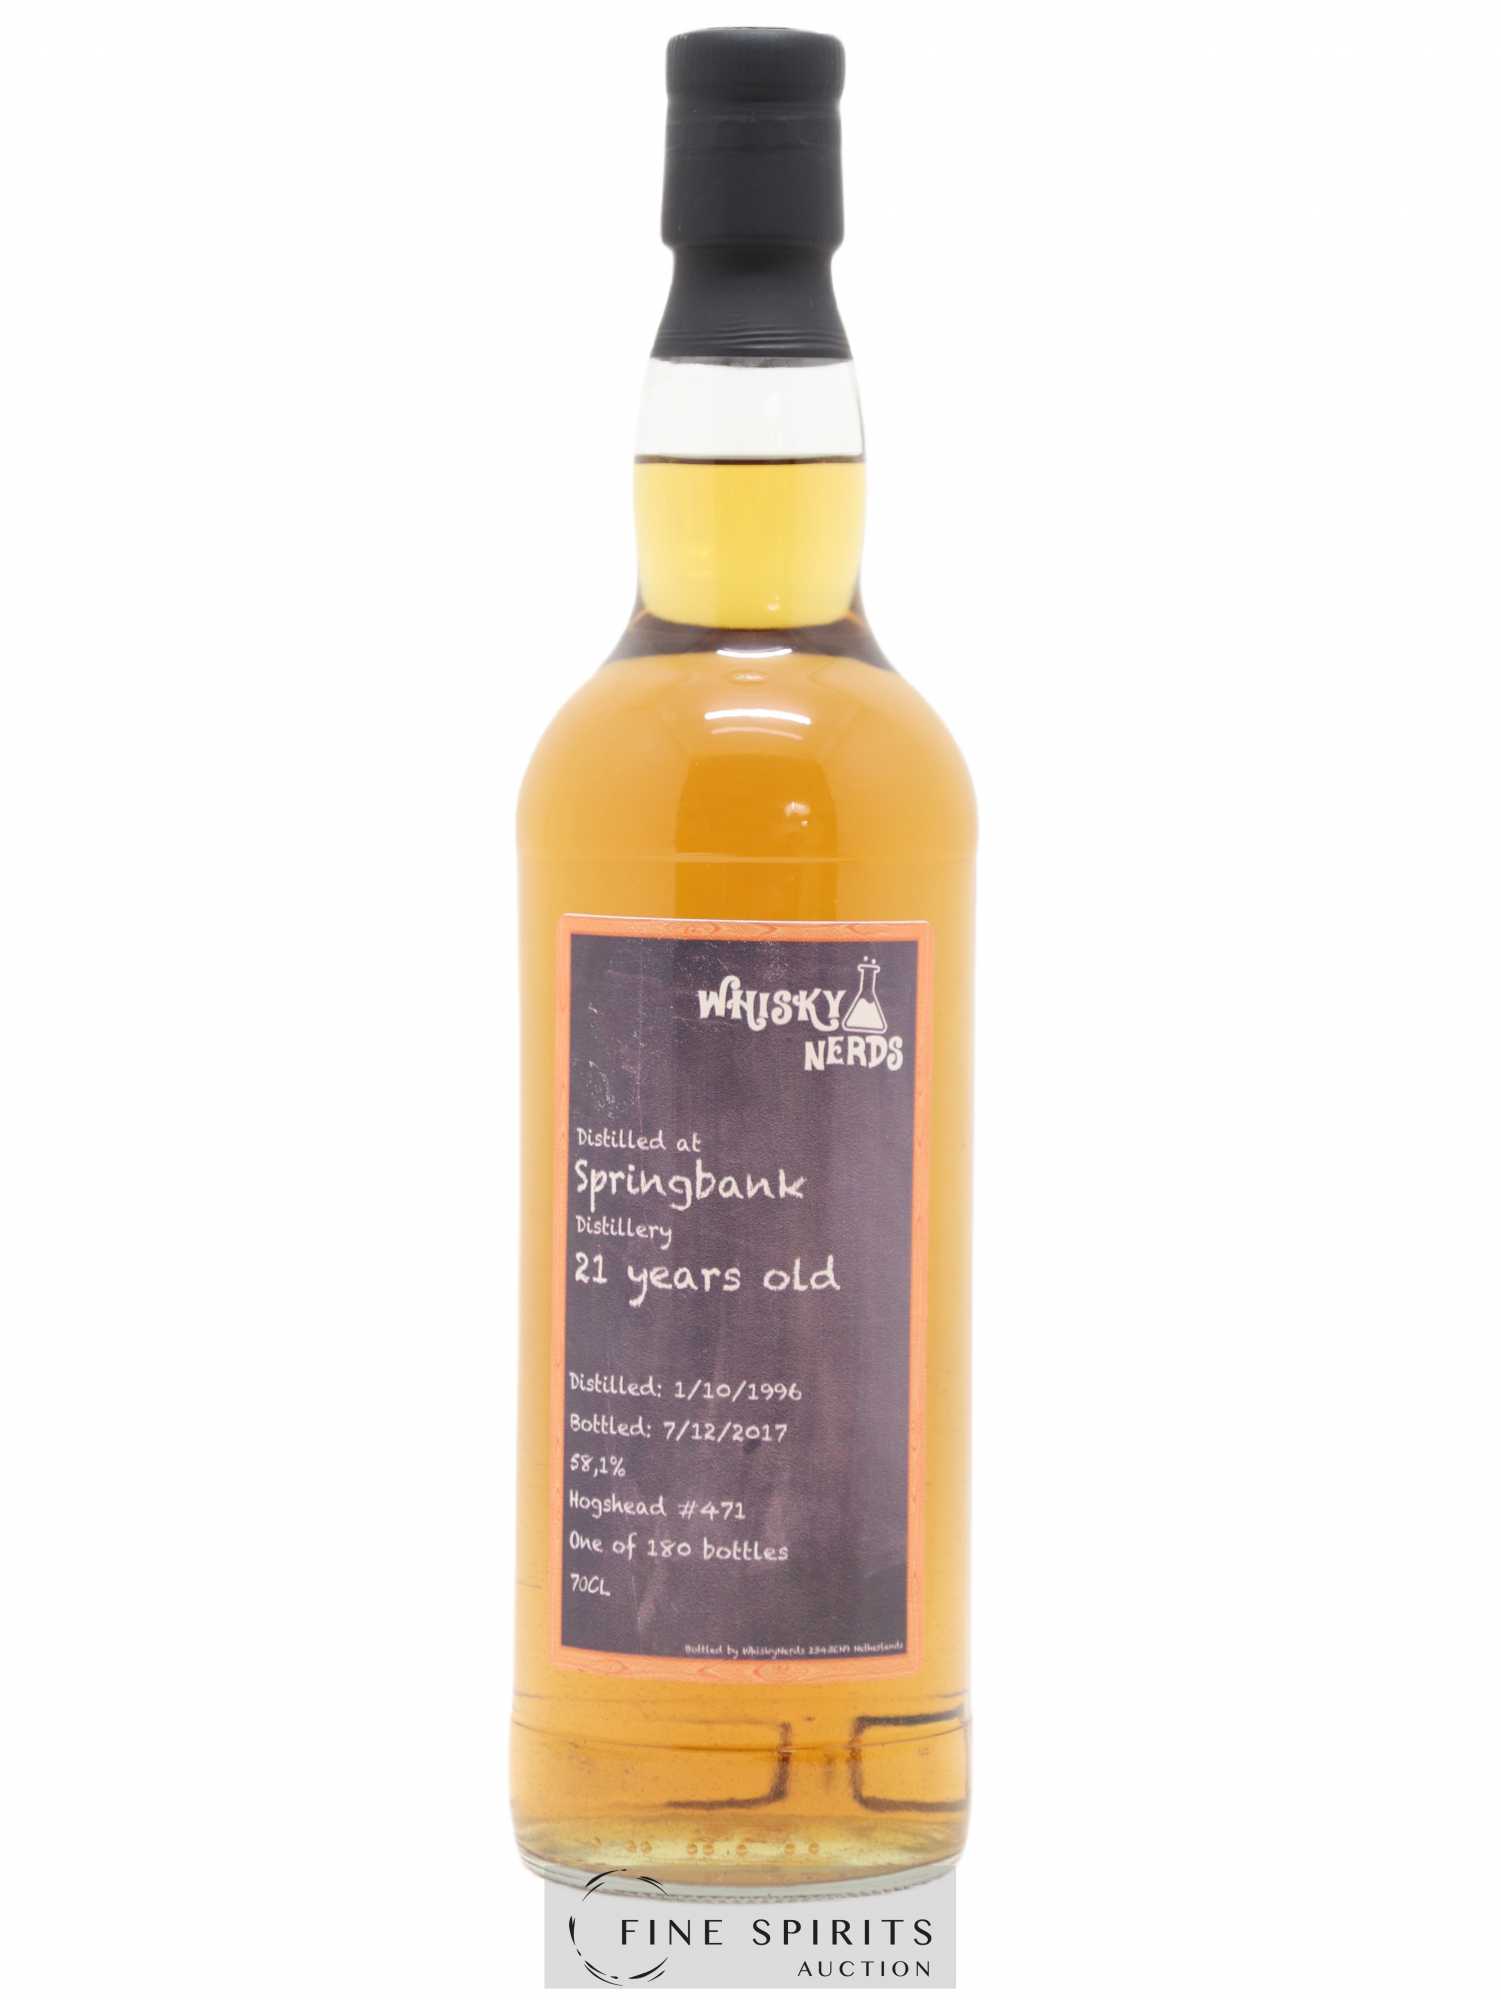 Springbank 21 years 1996 Whisky Nerds Hogshead n°471 - One of 180 - bottled 2017 